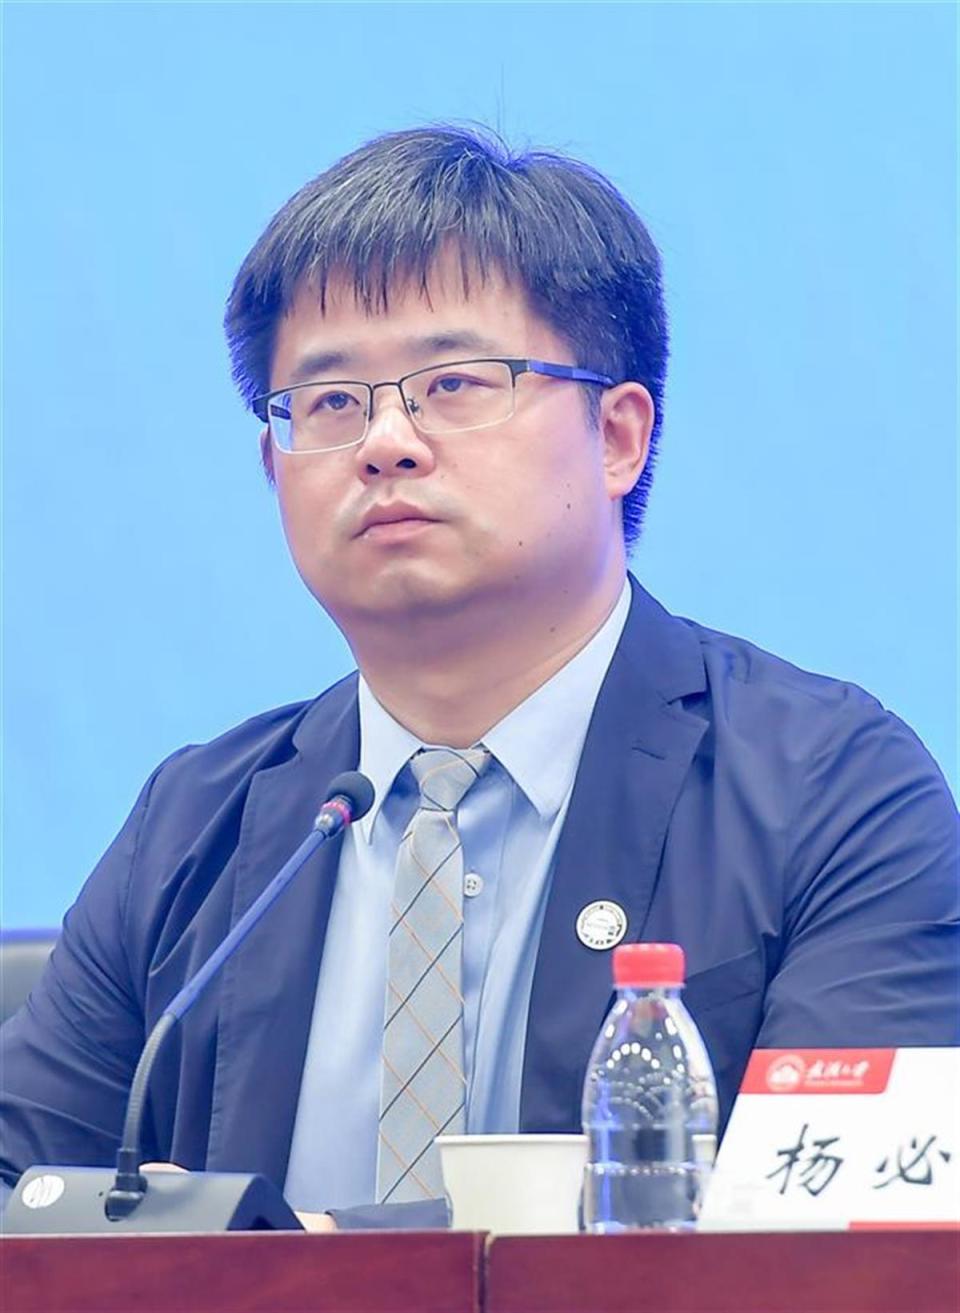 测绘遥感信息工程国家重点实验室主任杨必胜介绍了武汉大学在空天信息